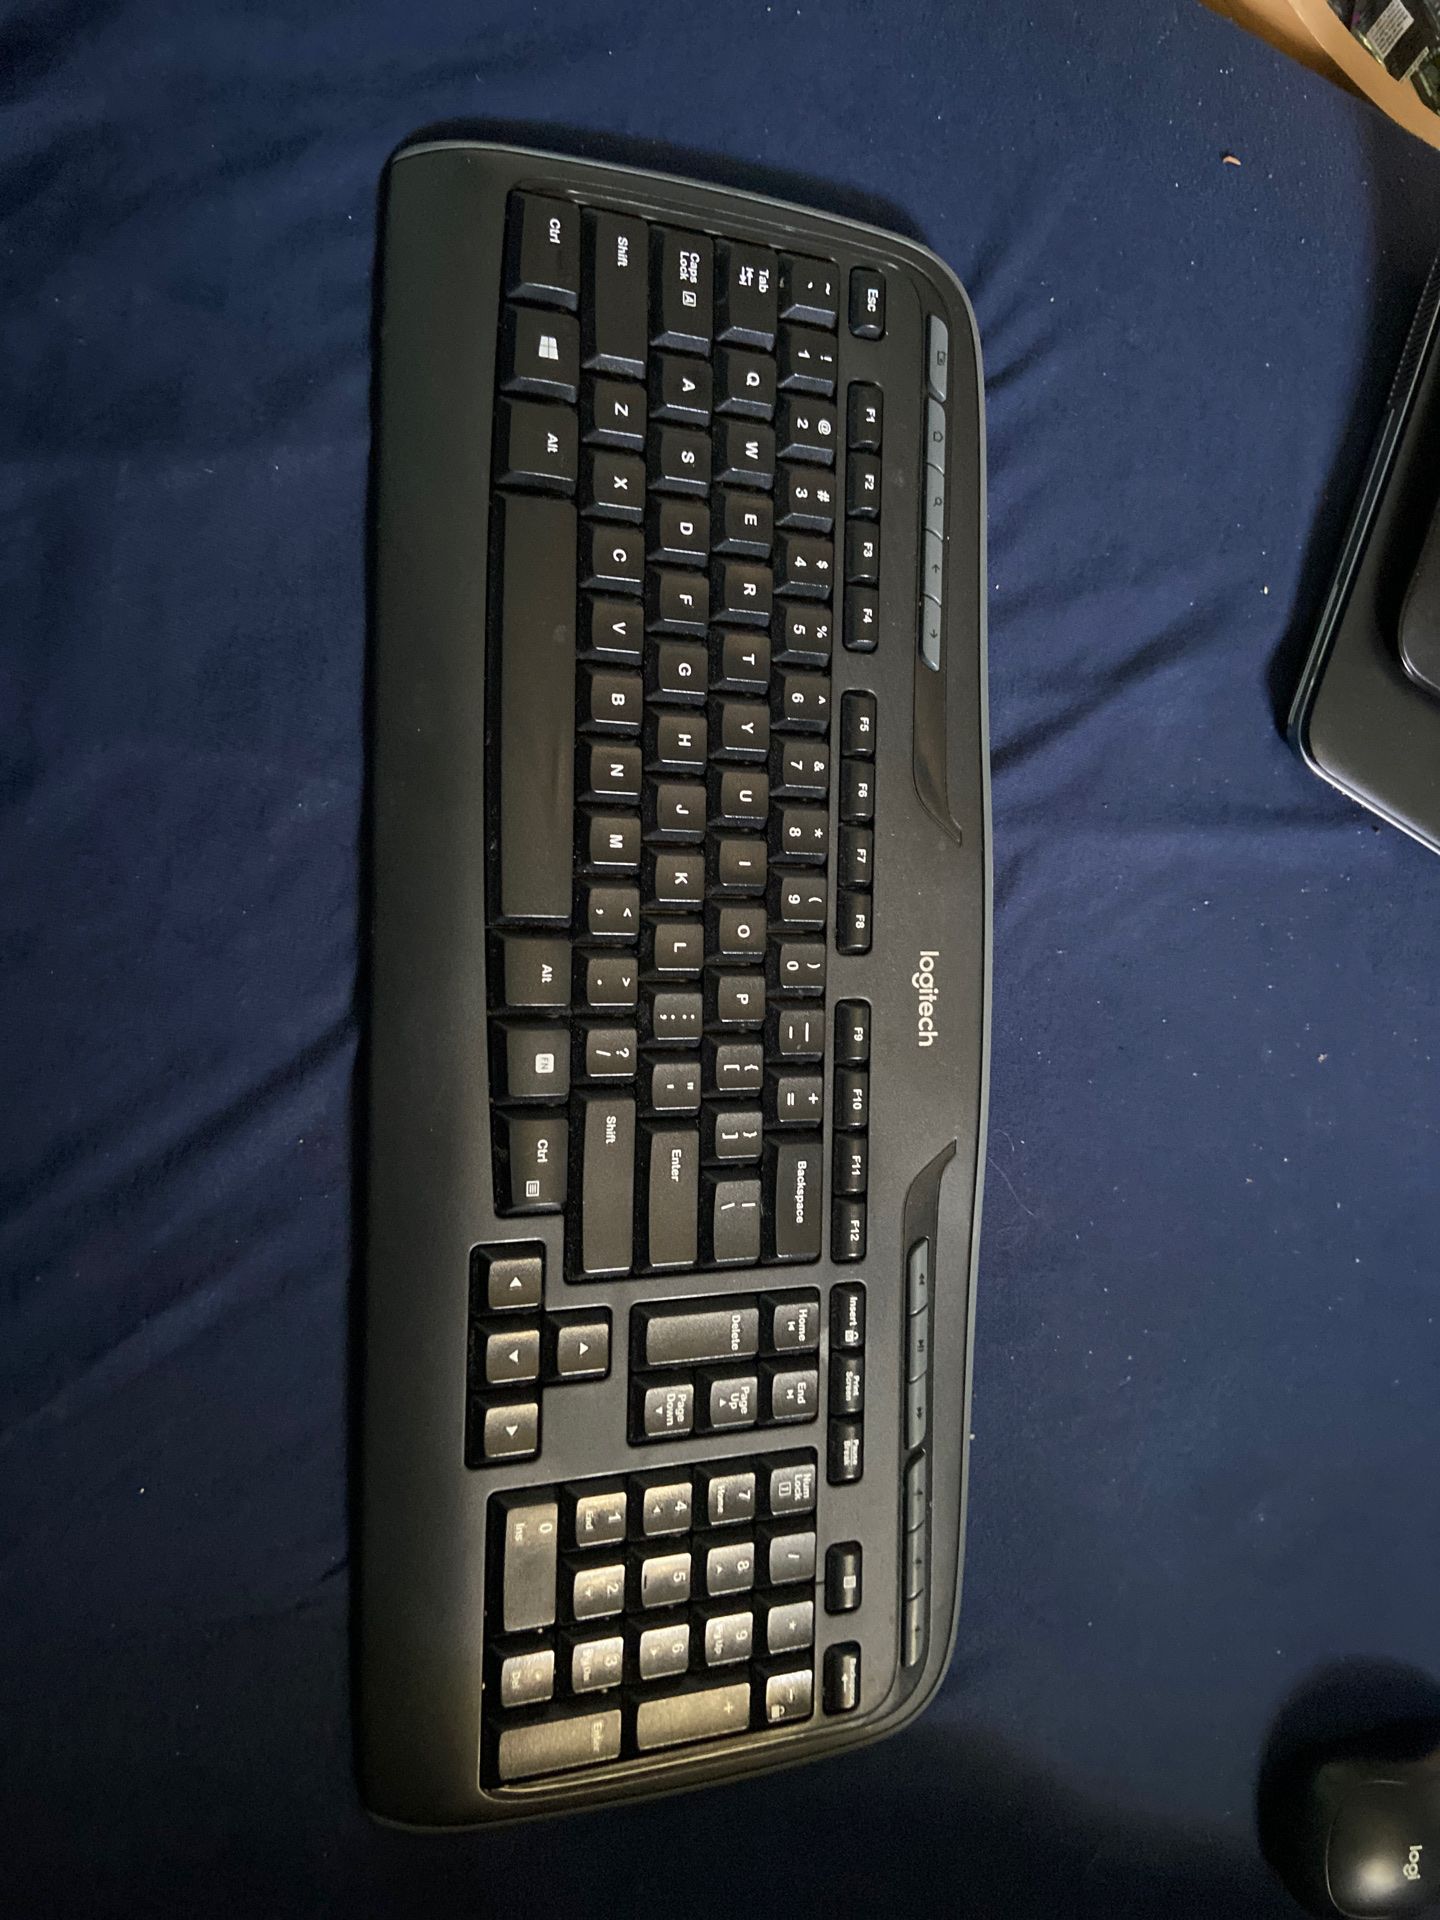 Logitech wireless keyboard and mouse set